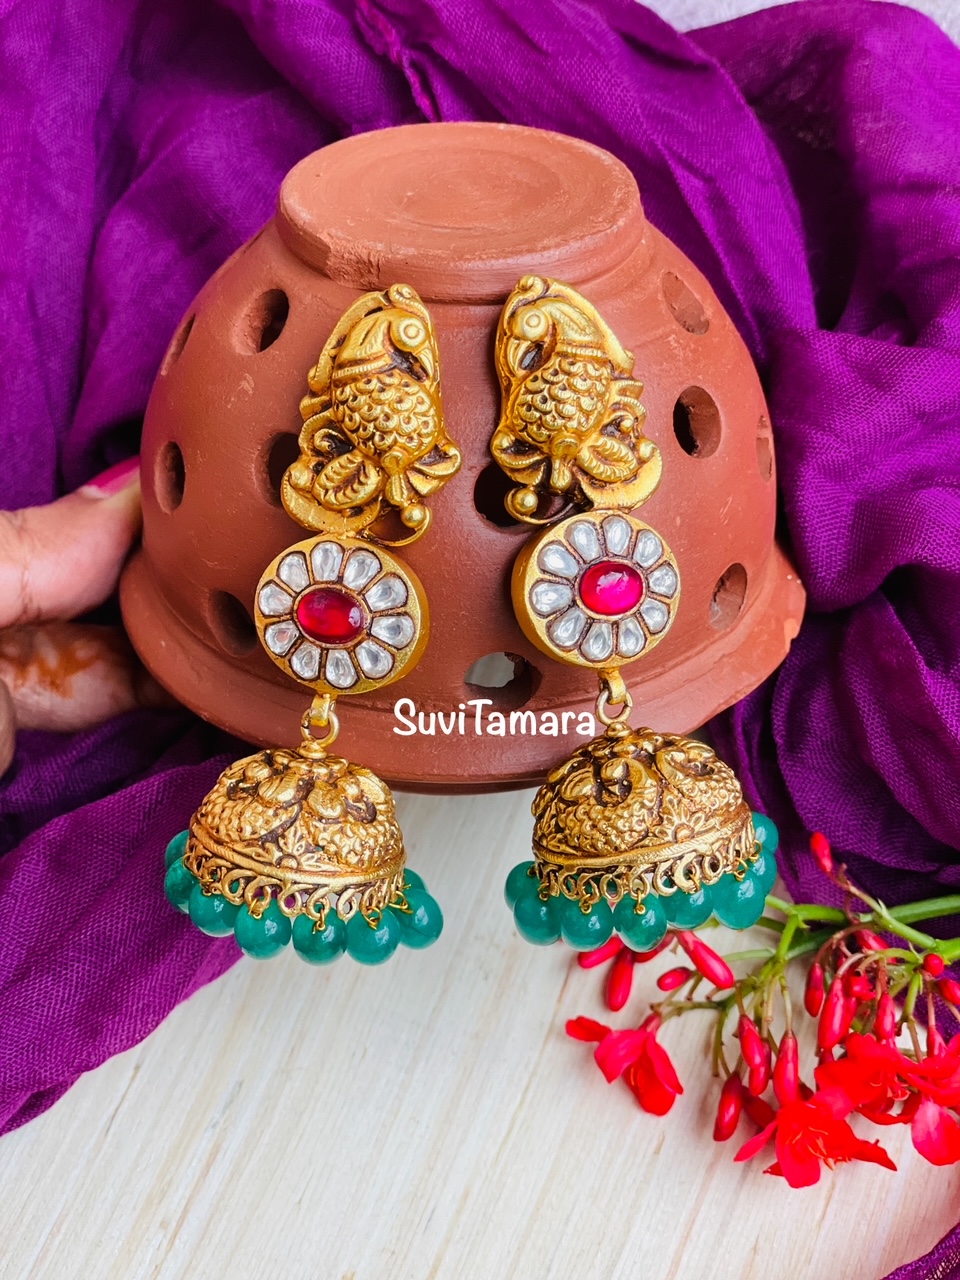 Kundan Jhumka Earrings Jewelry/ Chand Bali Jhumkas / Chandelier Earrings/bollywood  Celebrity Earring/kundan Earrings - Etsy | Indian jewellery design earrings,  Fashion jewelry earrings, Celebrities earrings